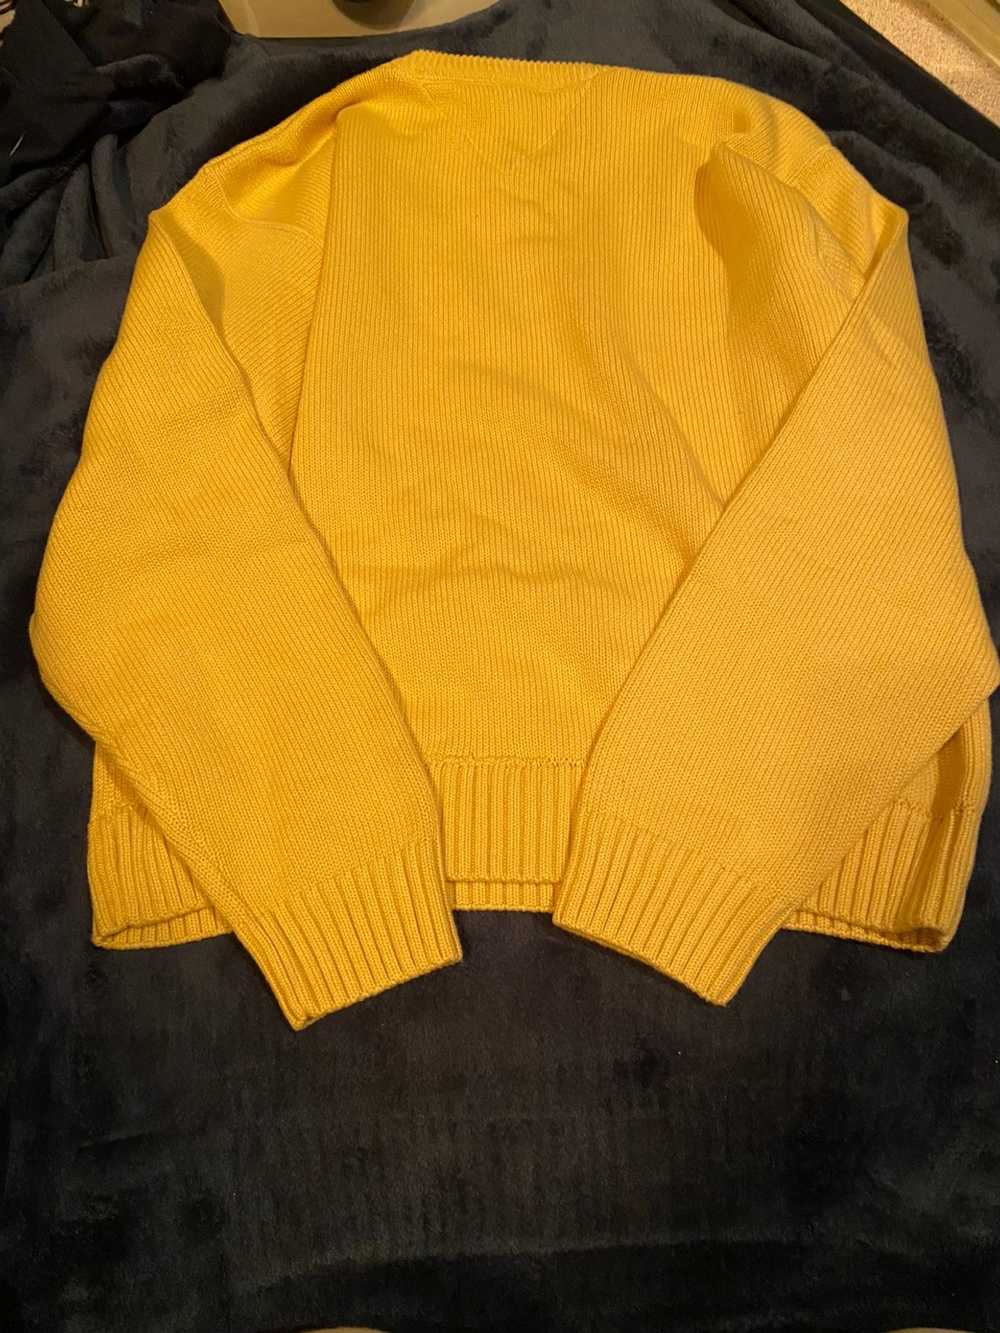 Tommy Hilfiger Vintage tommy hilfiger sweater - image 4